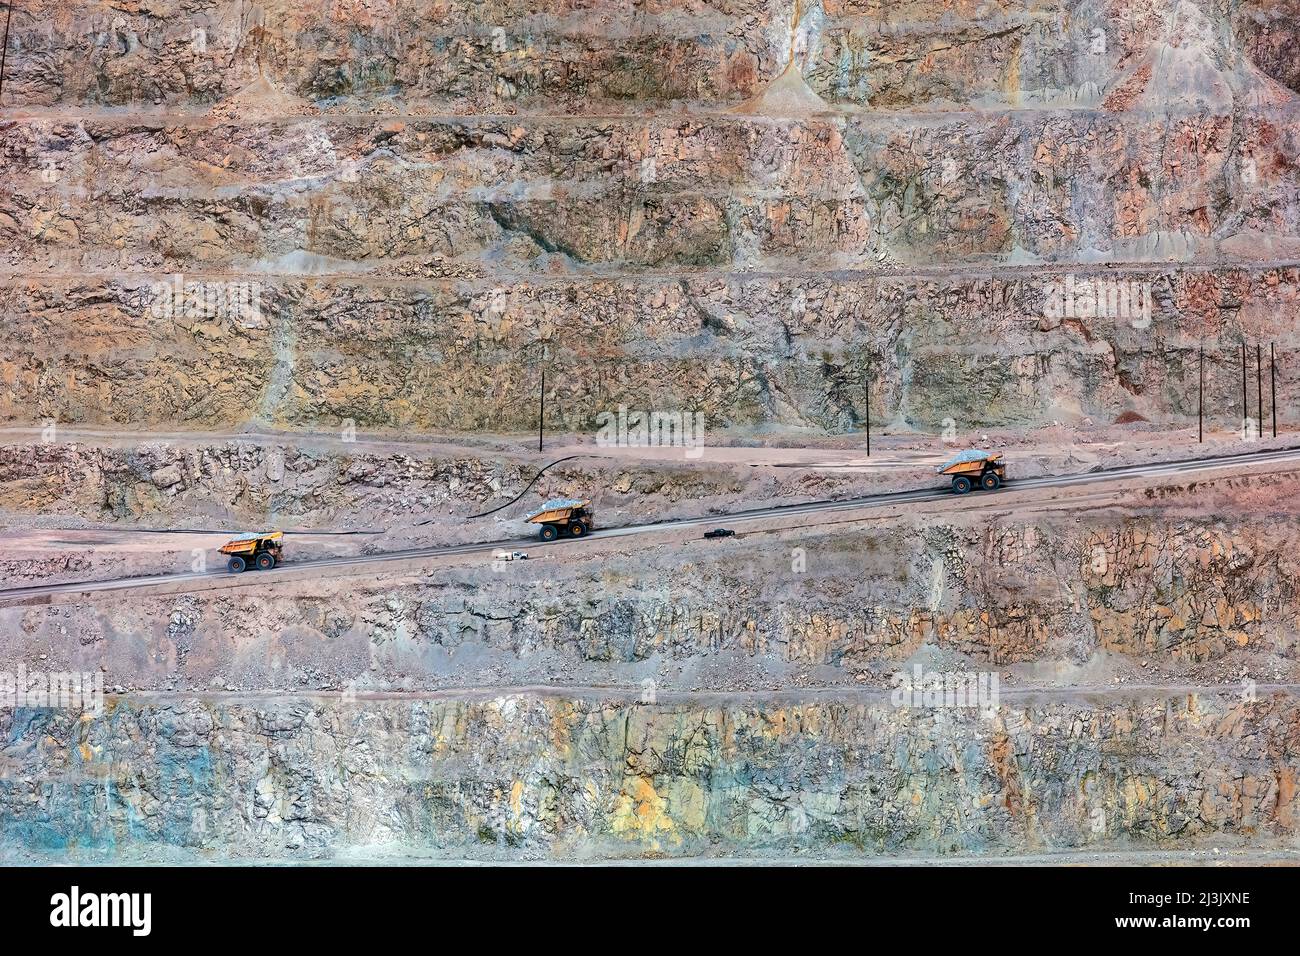 Enormes camiones volquete de Minería - la mina de cobre Morenci, Arizona, la mina de cobre más grande en América del Norte Foto de stock